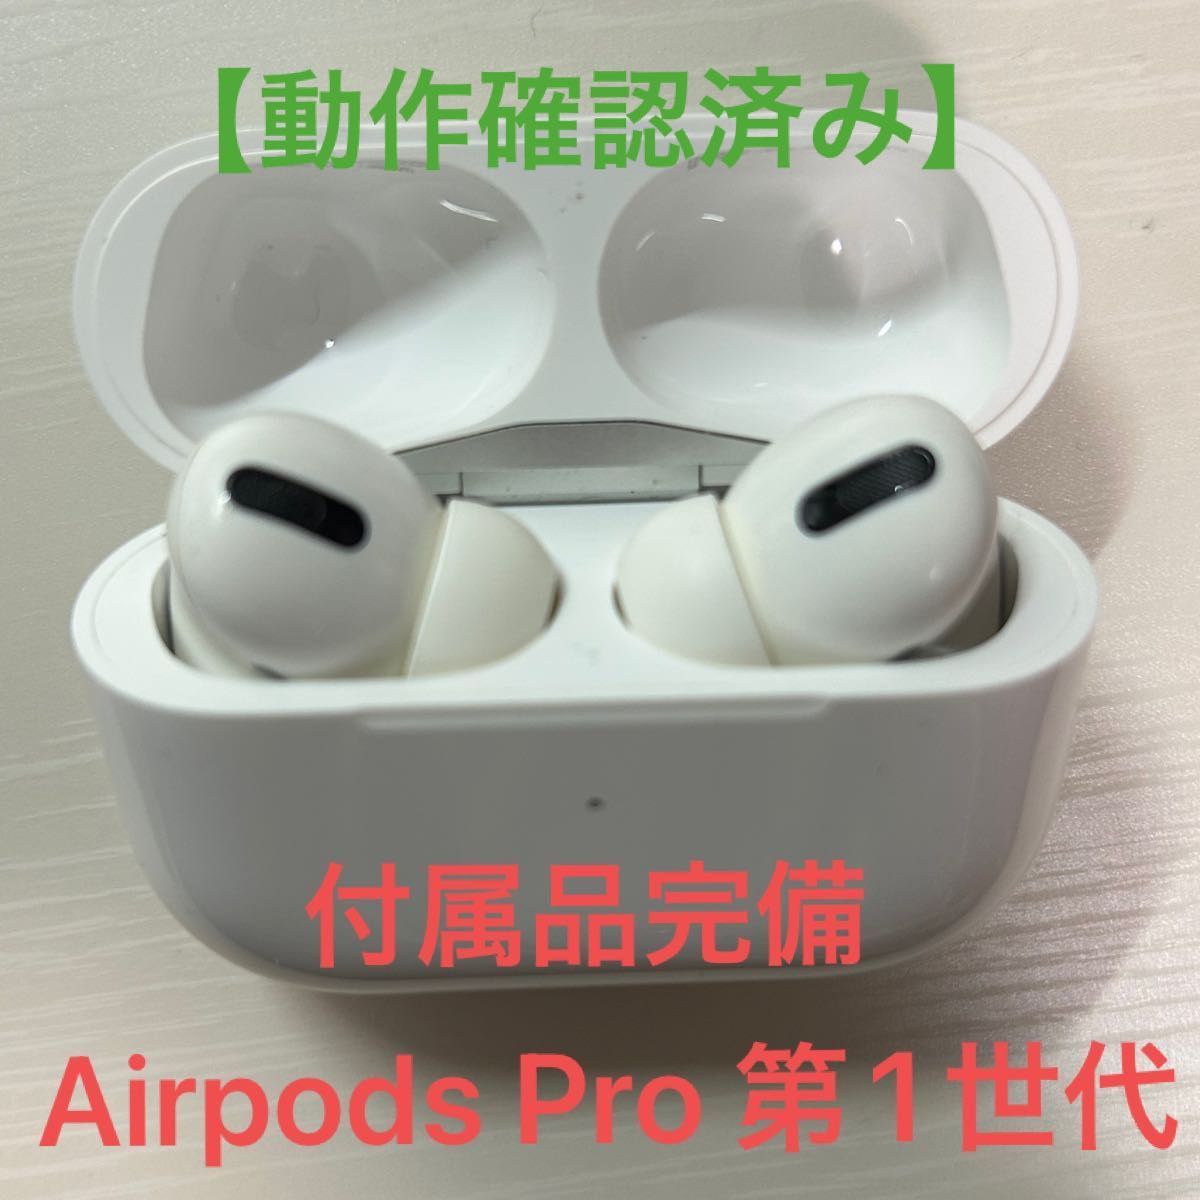 【付属品完備】Airpods Pro 第1世代